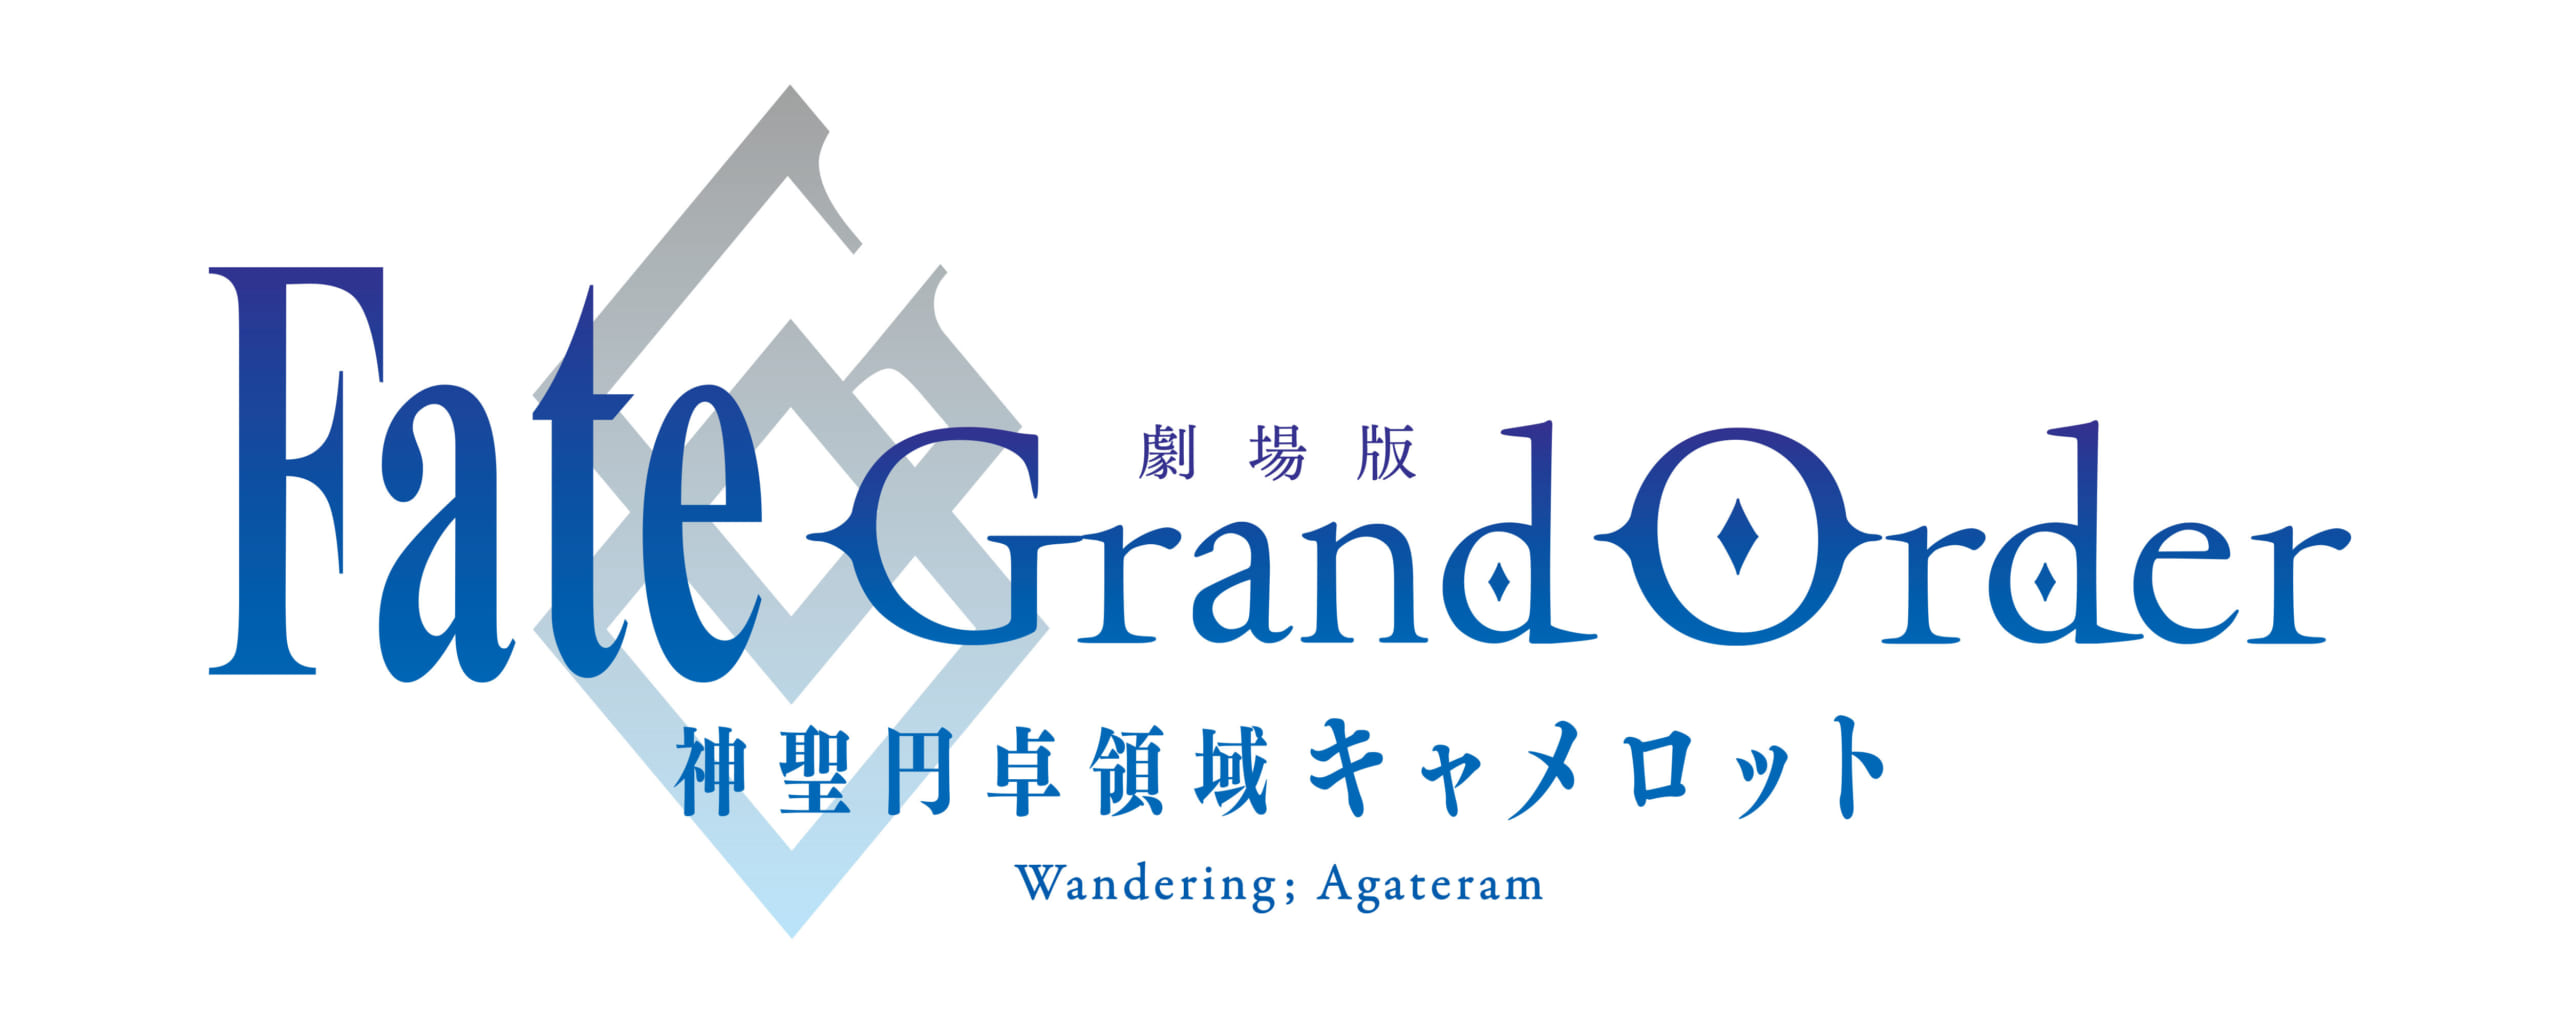 「劇場版Fate/Grand Order -神聖円卓領域キャメロット- 前編 Wandering; Agateram」